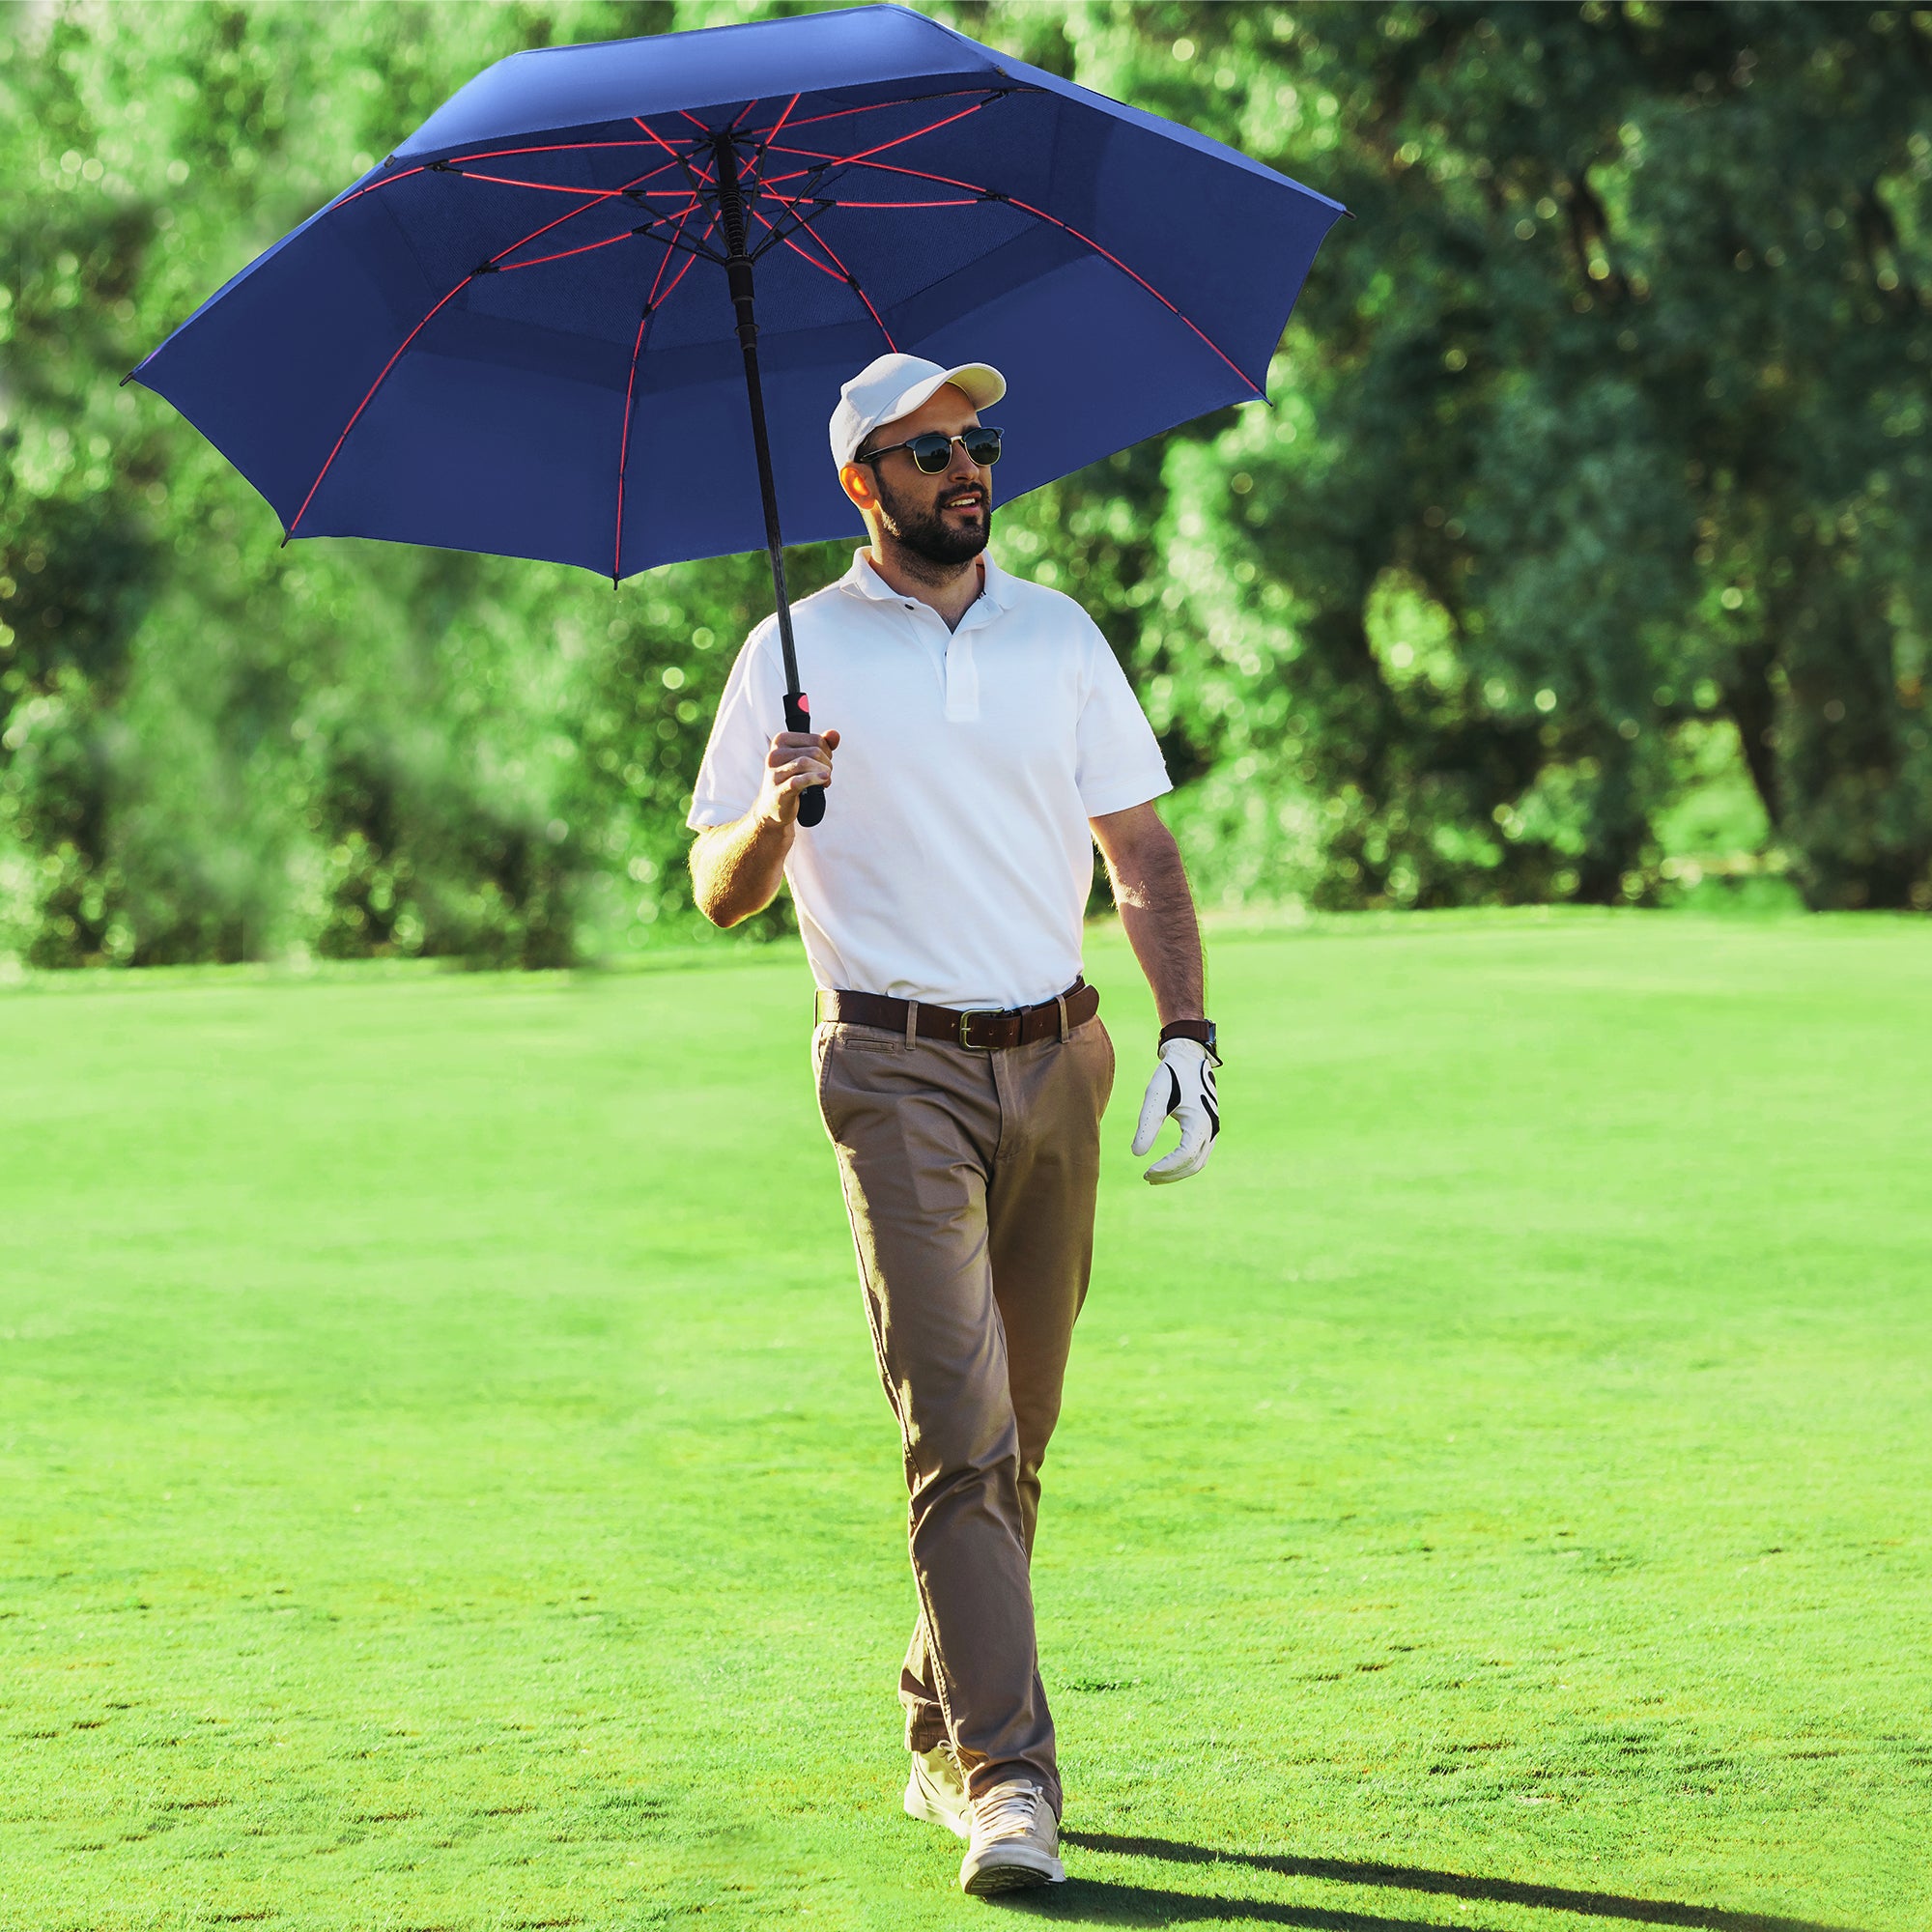 Golf No Matter the Weather with the Repel Golf Umbrella - Repel Umbrella